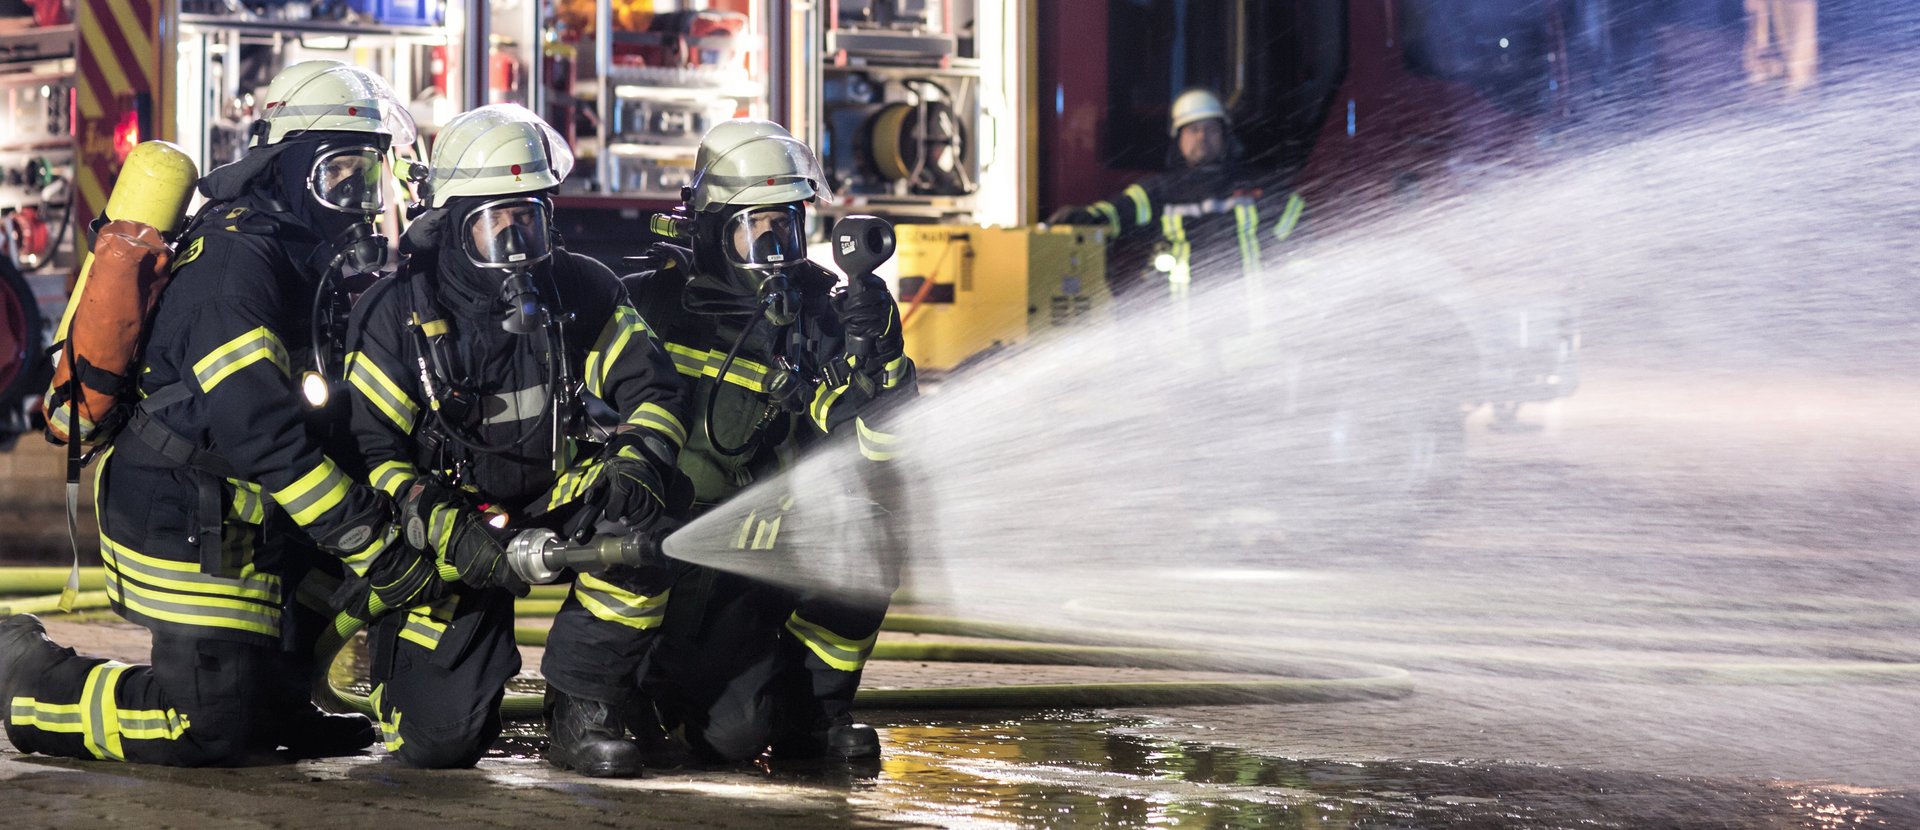 3 Feuerwehrmänner halten einen Löschschlauch, aus dem Wasser spritzt